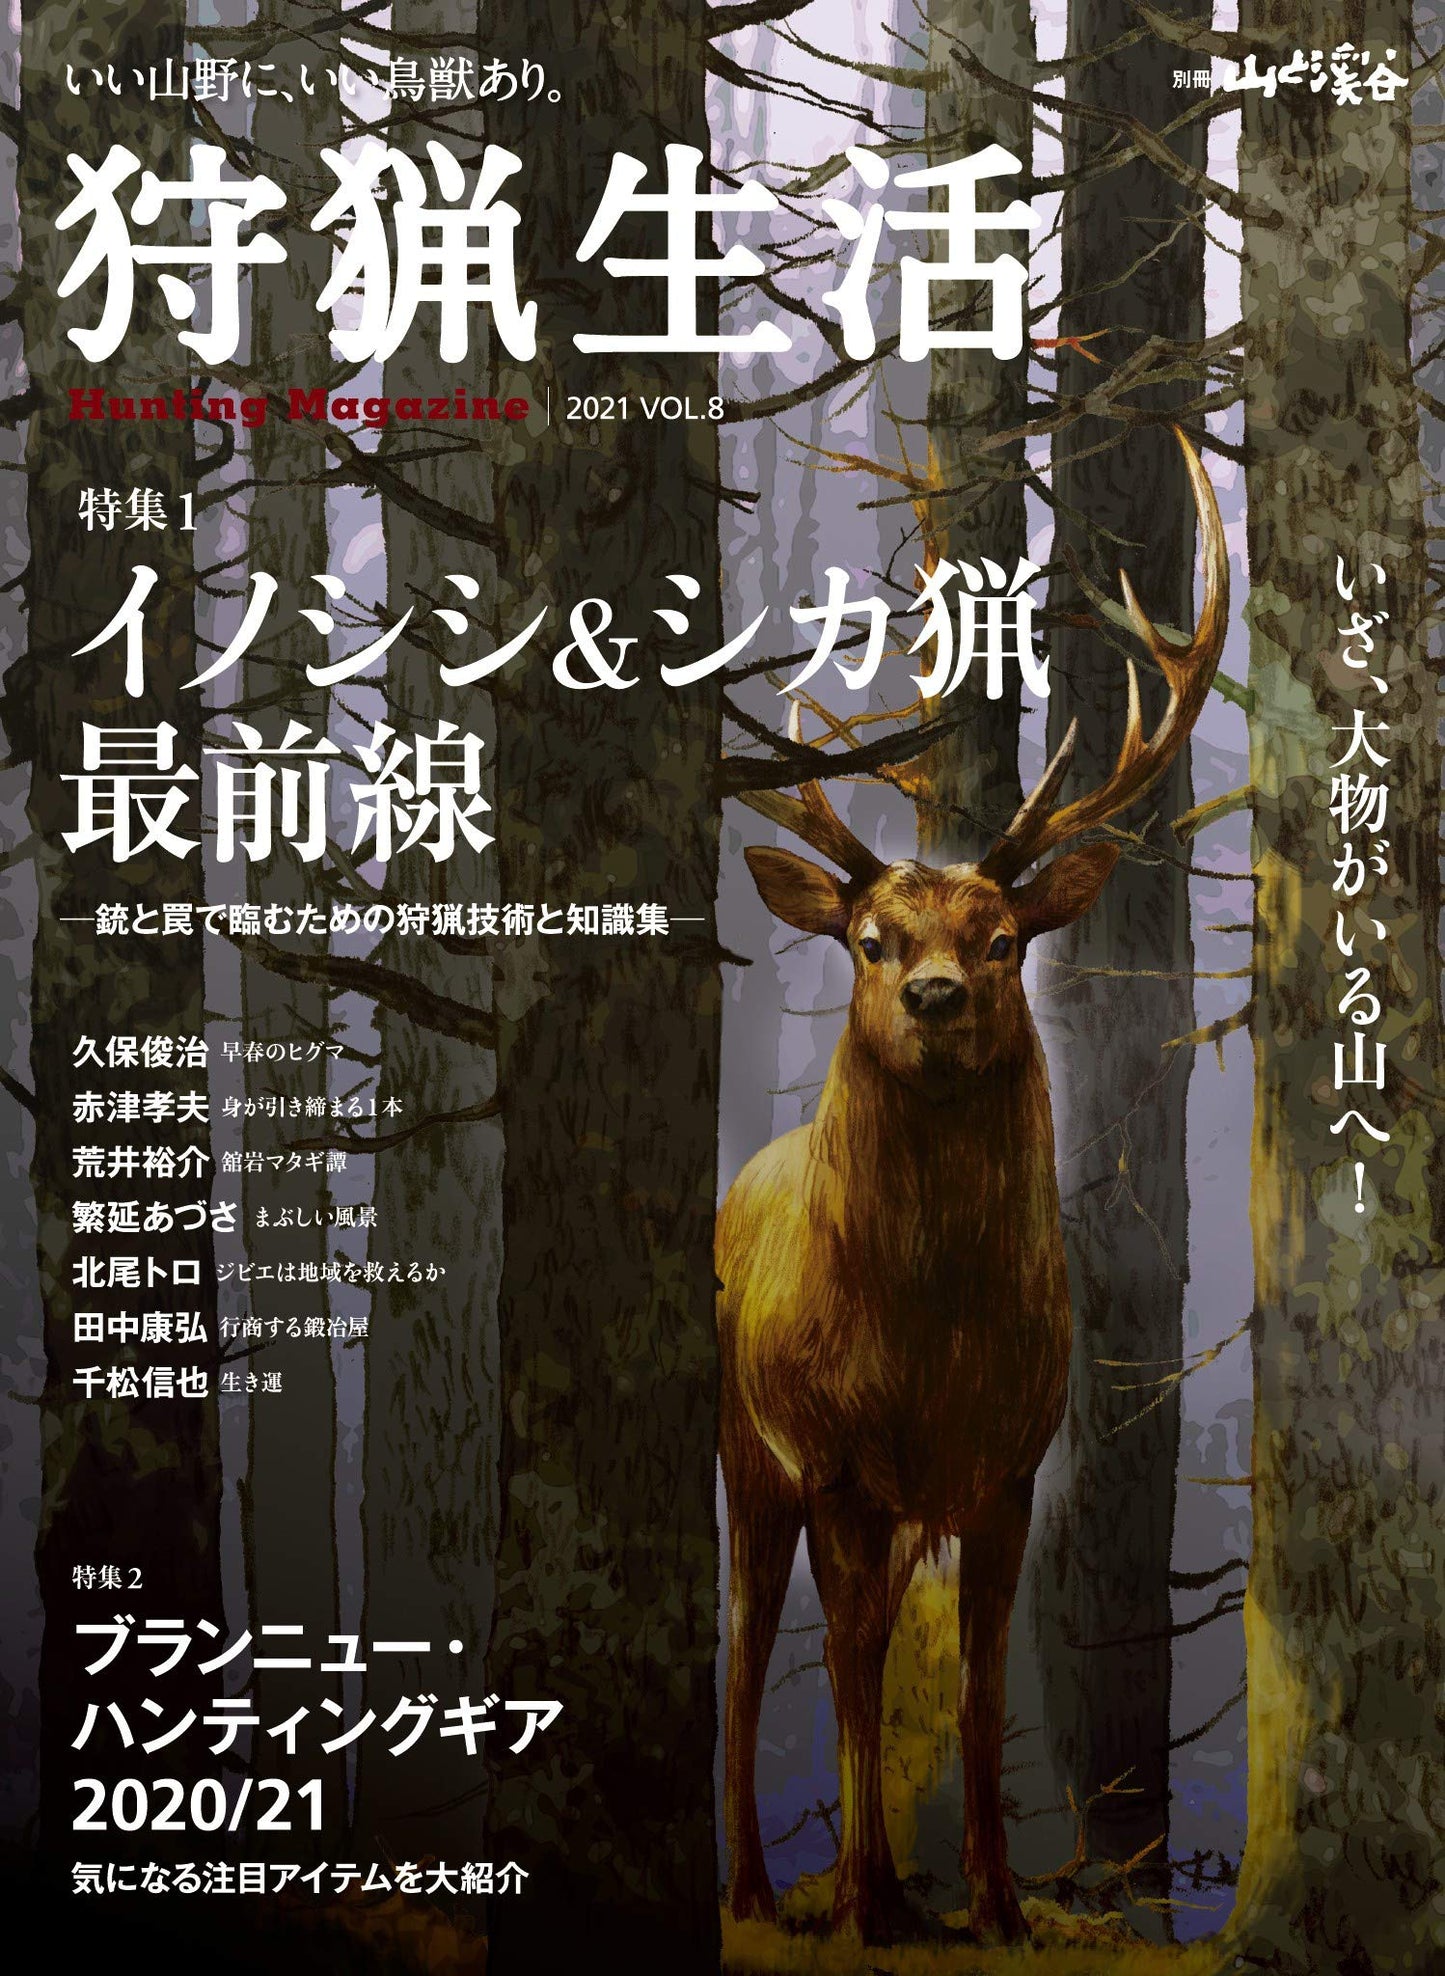 狩猟生活 2021VOL.8「イノシシ&シカ猟最前線」